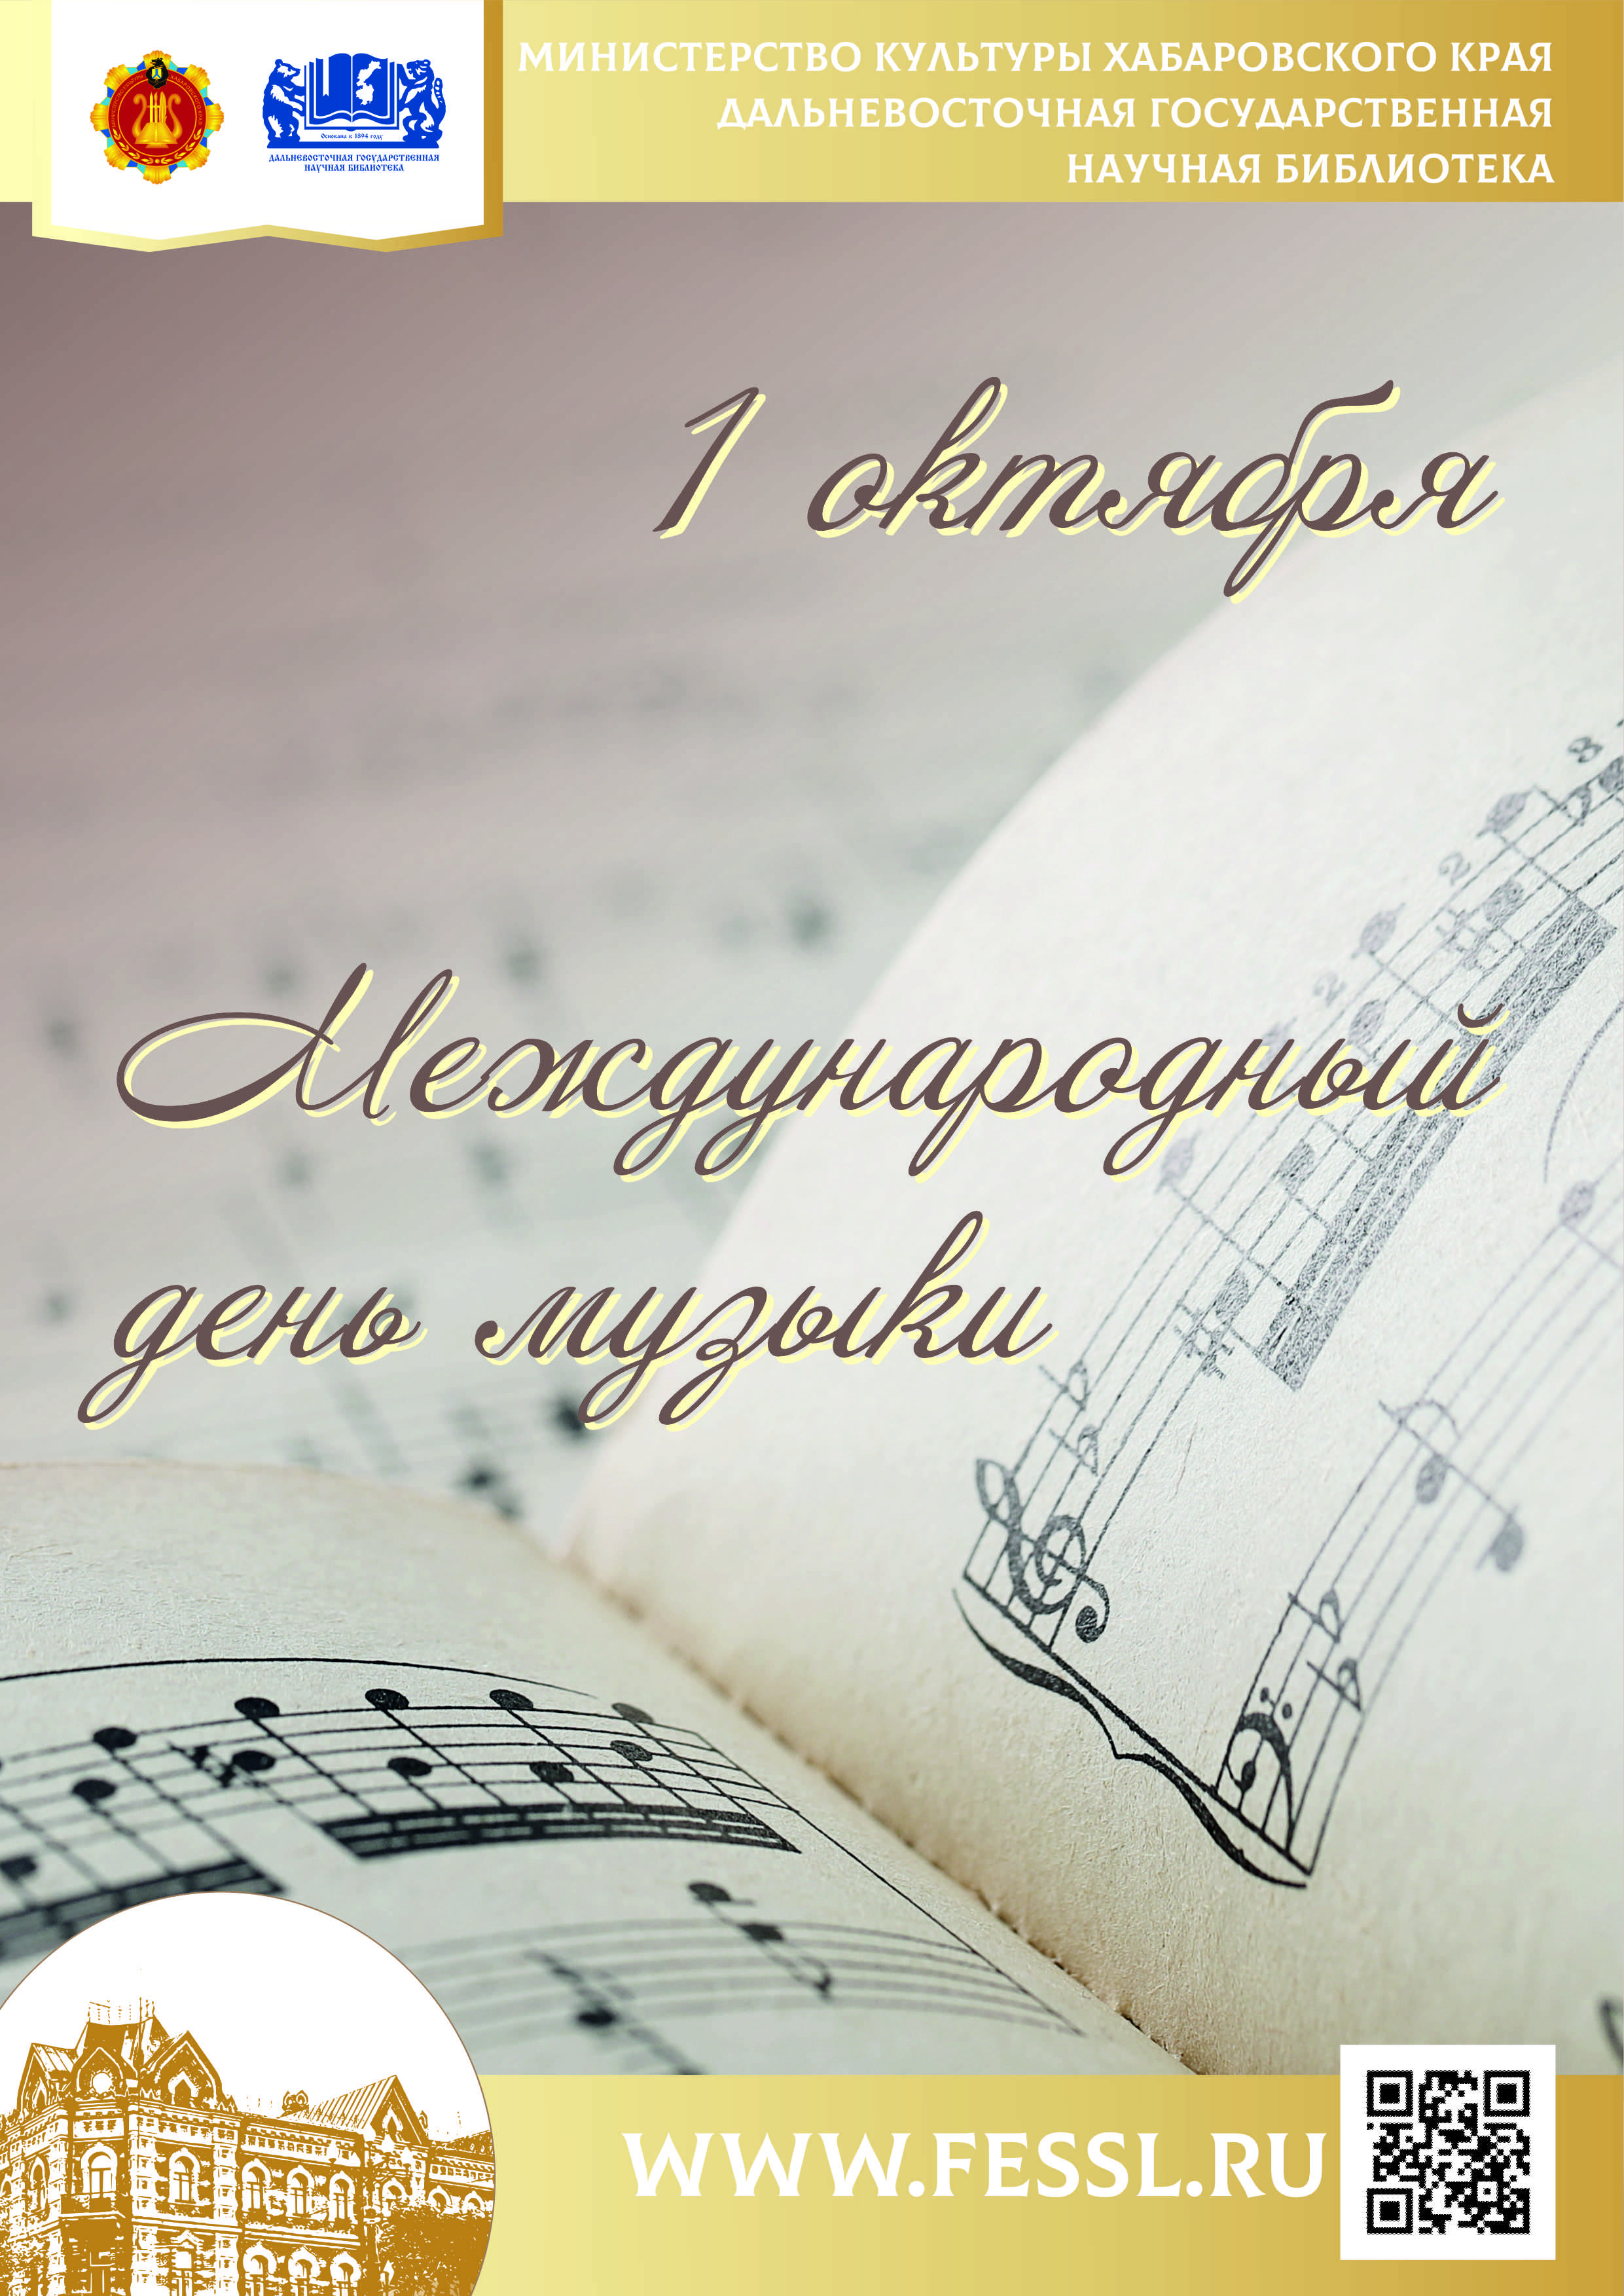 1 октября — Международный день музыки